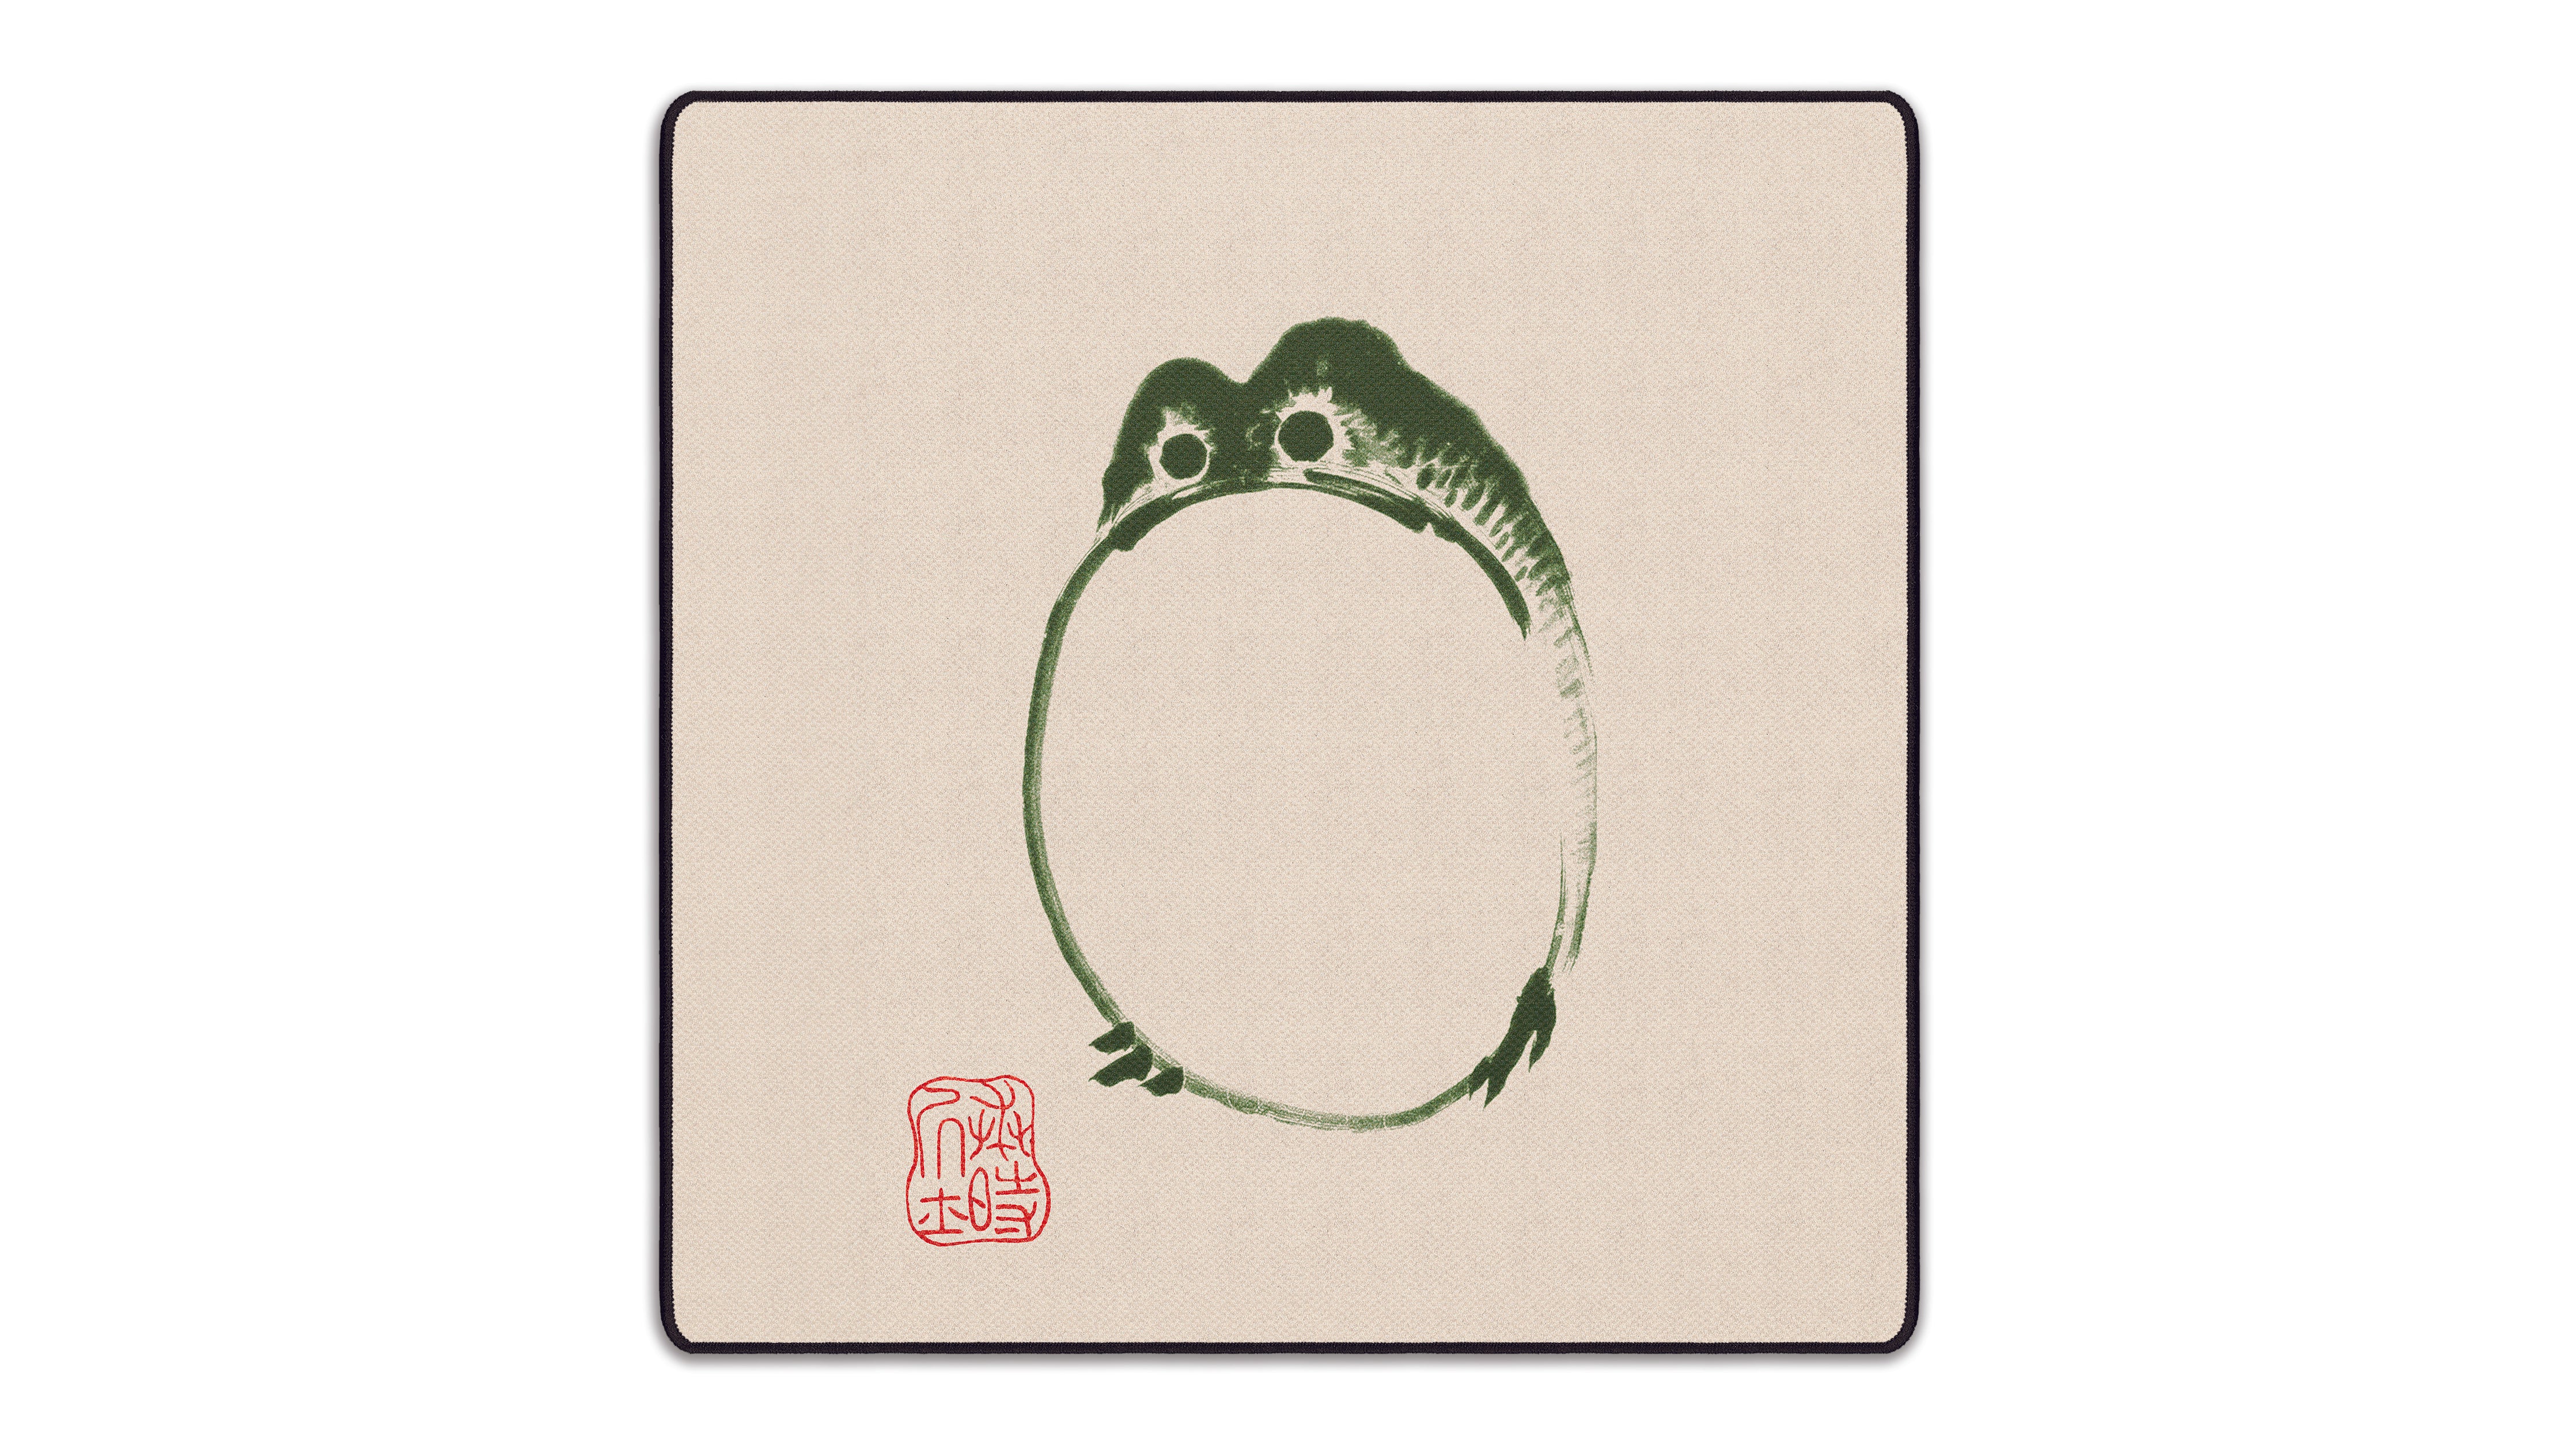 The Frog, by Matsumoto Hoji